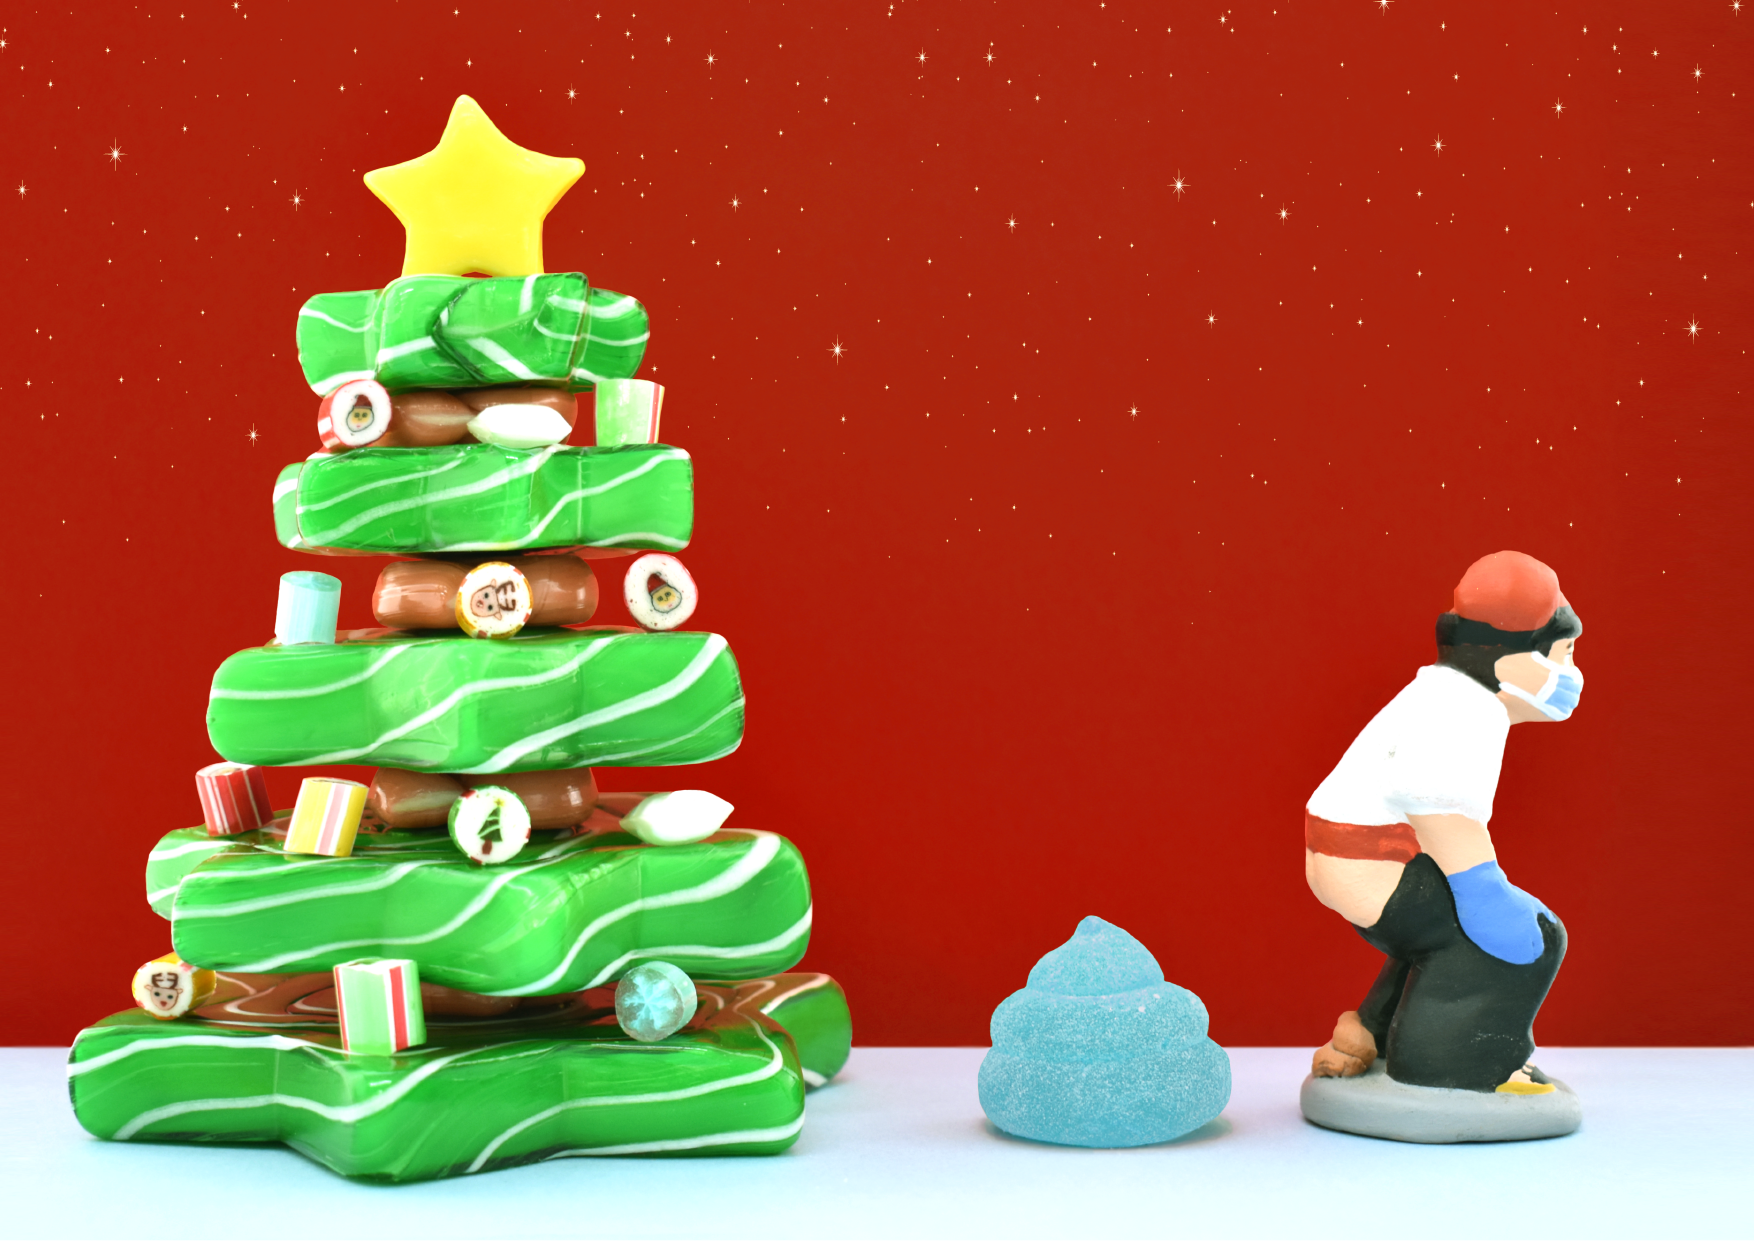 キャンディのクリスマスツリーを作ろう 誰でもできるオリジナルキットなど 聖夜スイーツ大集合 パパブブレ Papabubble 公式